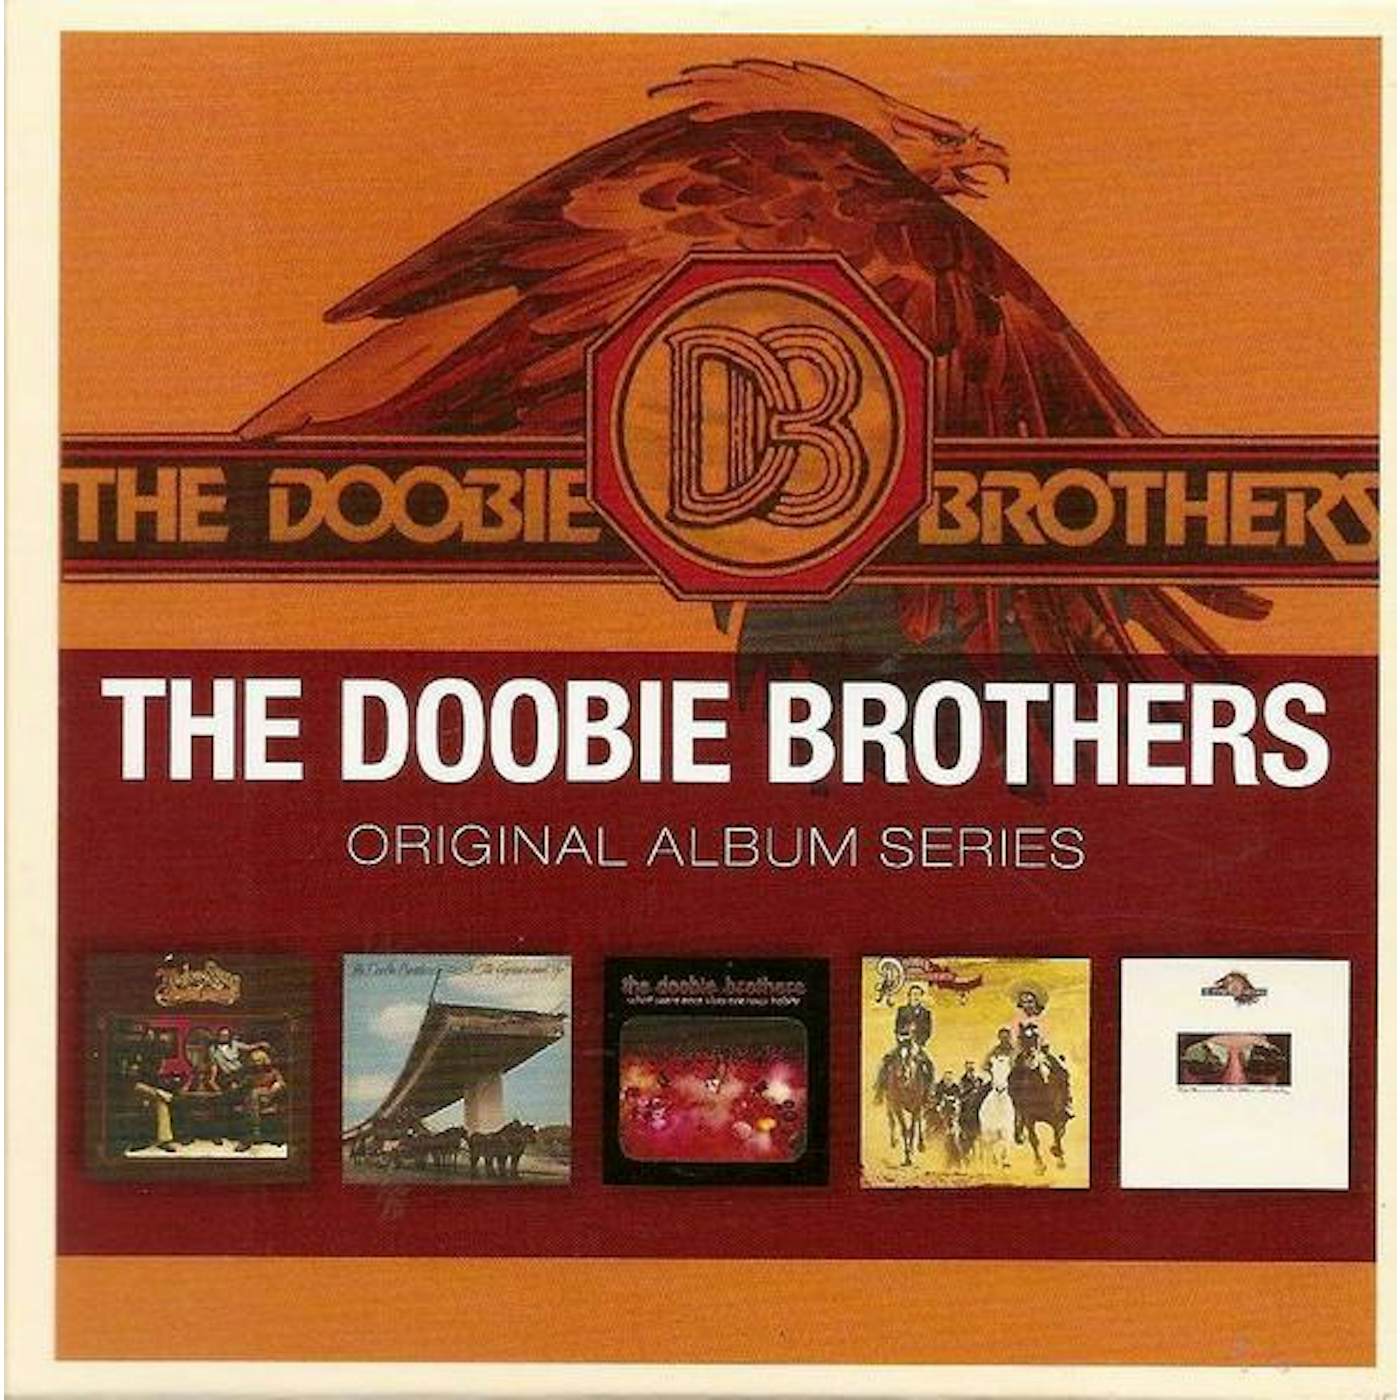 The Doobie Brothers ORIGINAL ALBUM SERIES CD